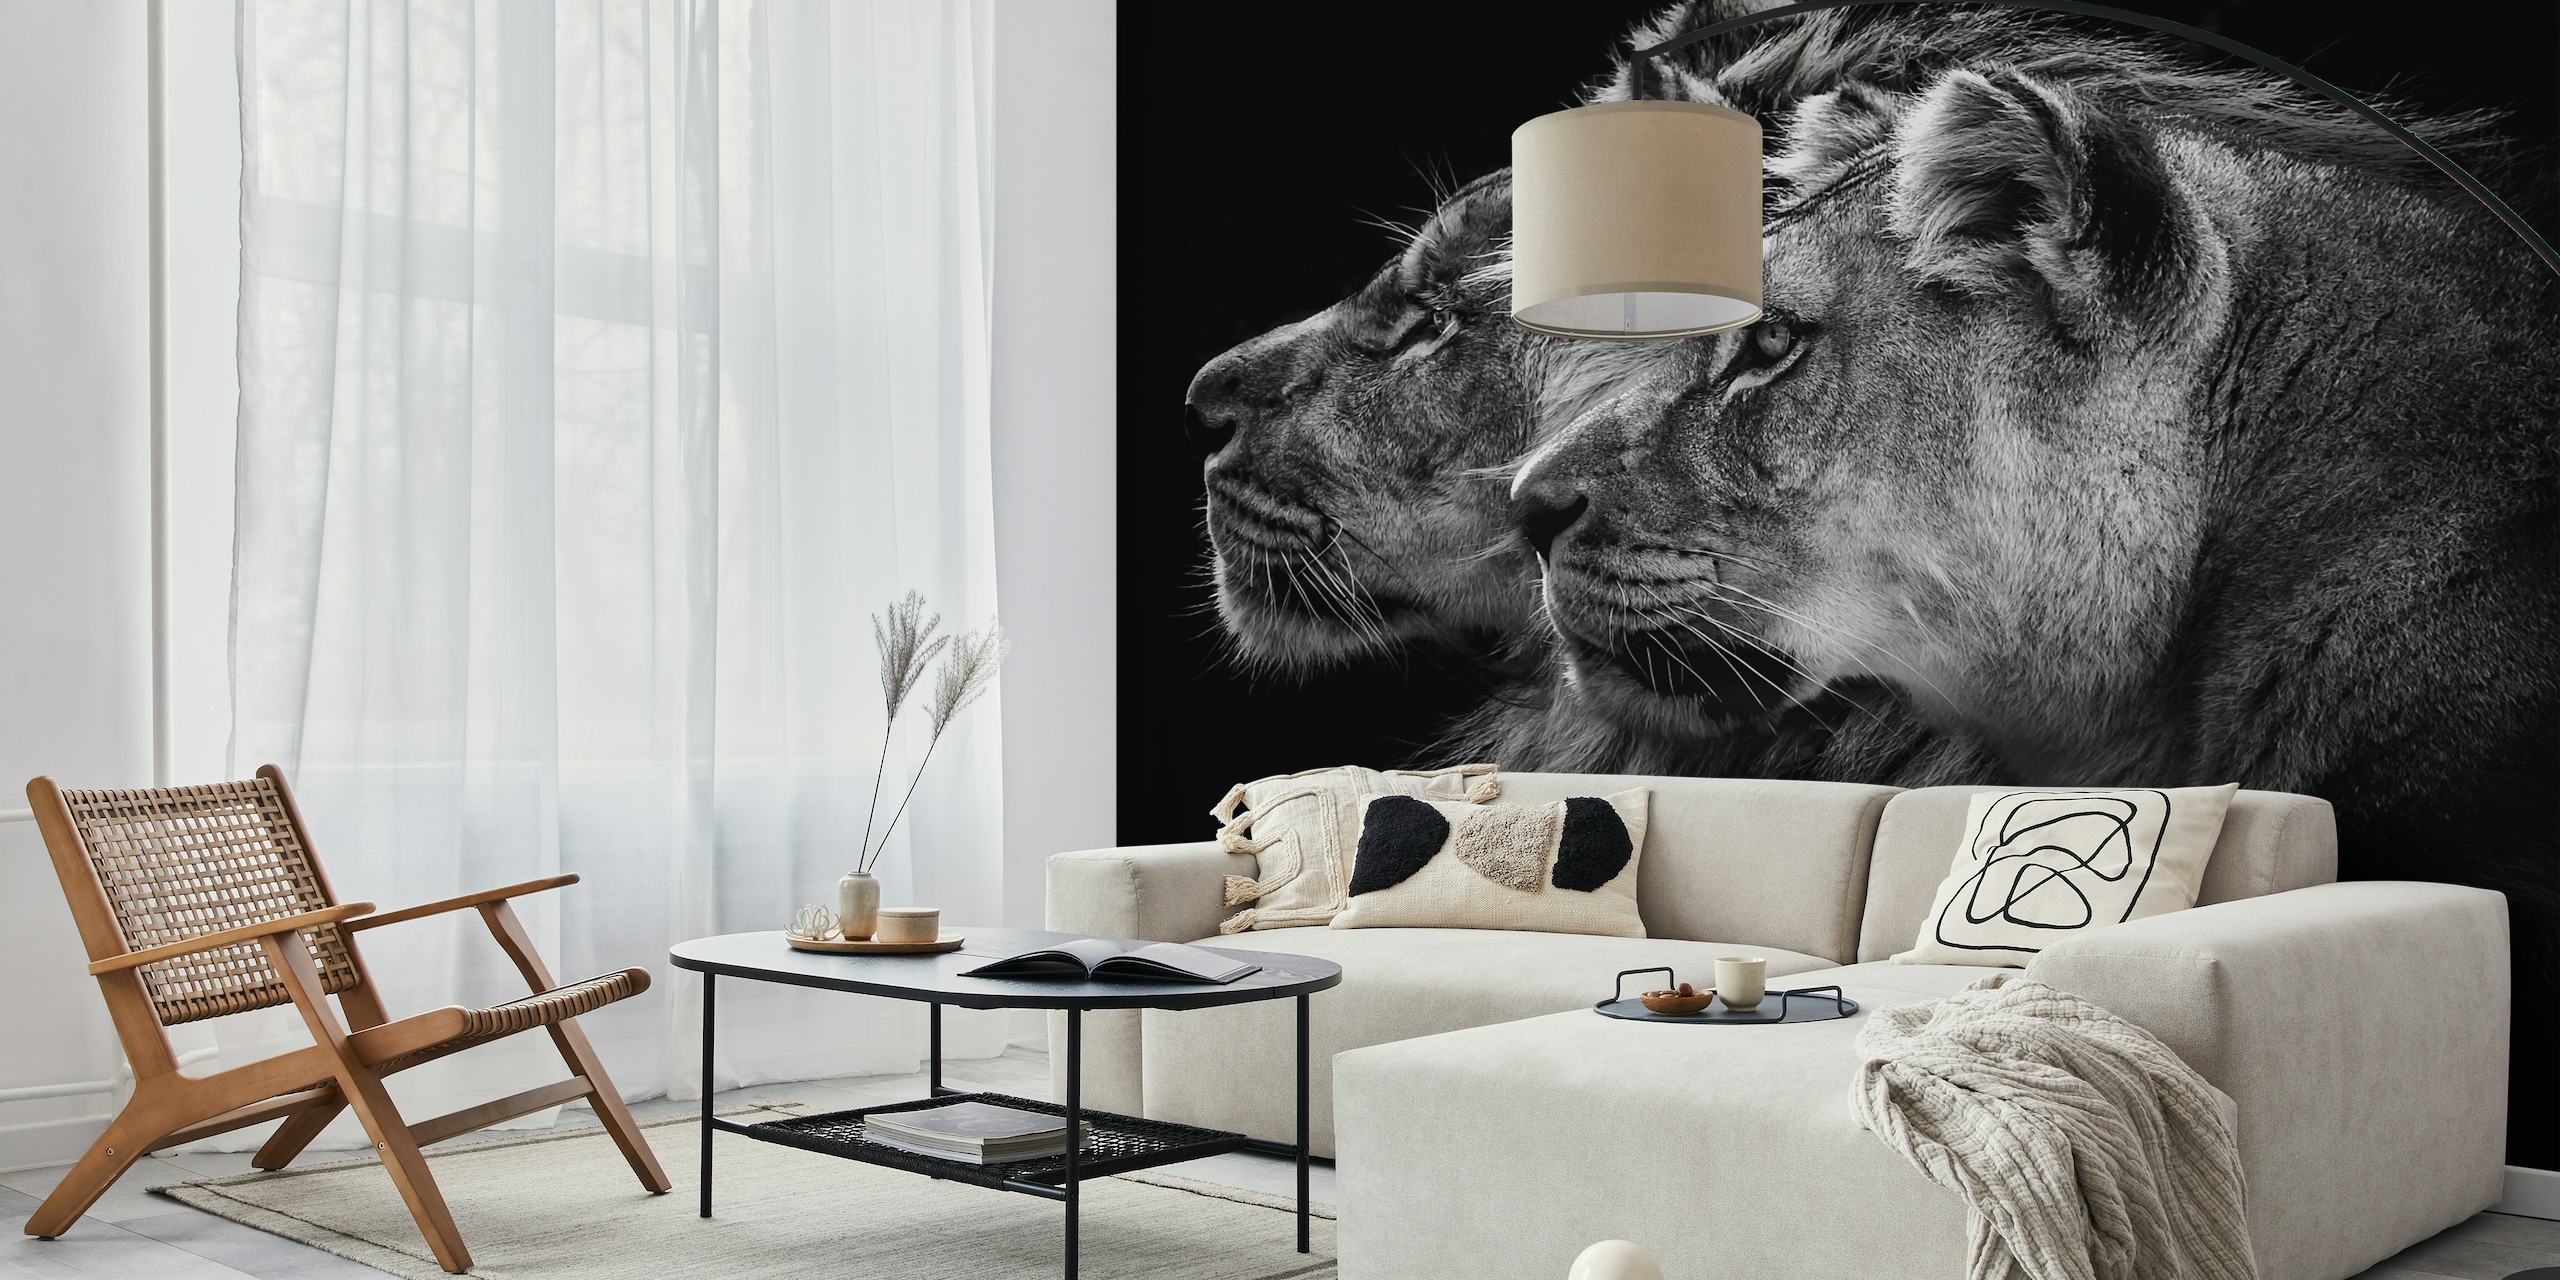 Murale in bianco e nero di un leone e una leonessa di profilo su uno sfondo scuro